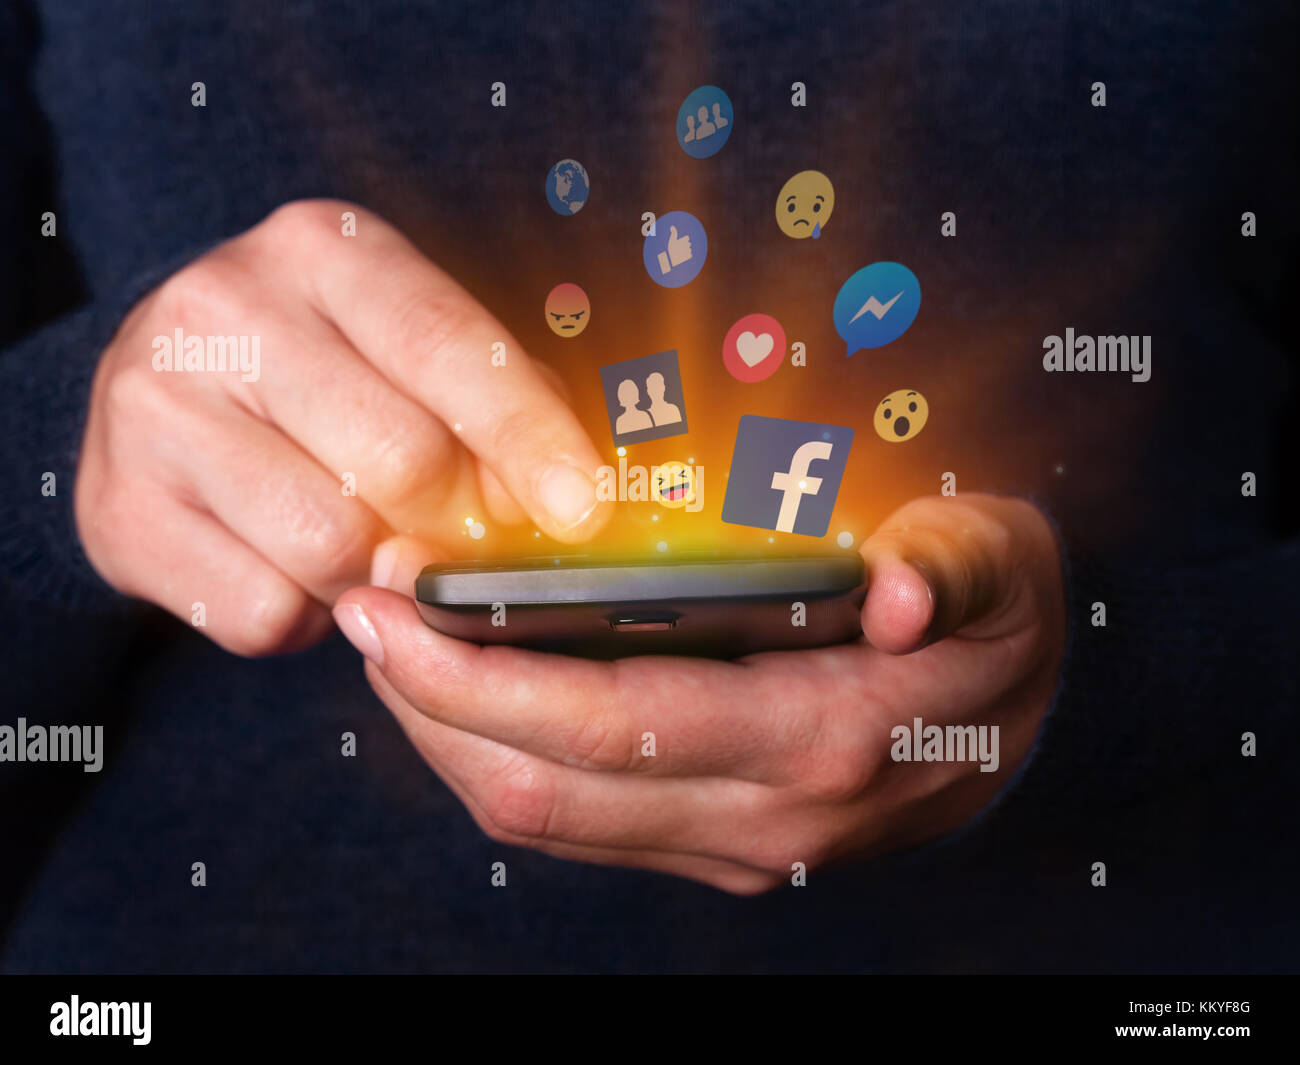 Frau Hände halten Sie Ihr Smartphone Handy Facebook Social Media Network App wie Messenger Freunde Gruppen Anmeldung Reaktionen emojis Stockfoto